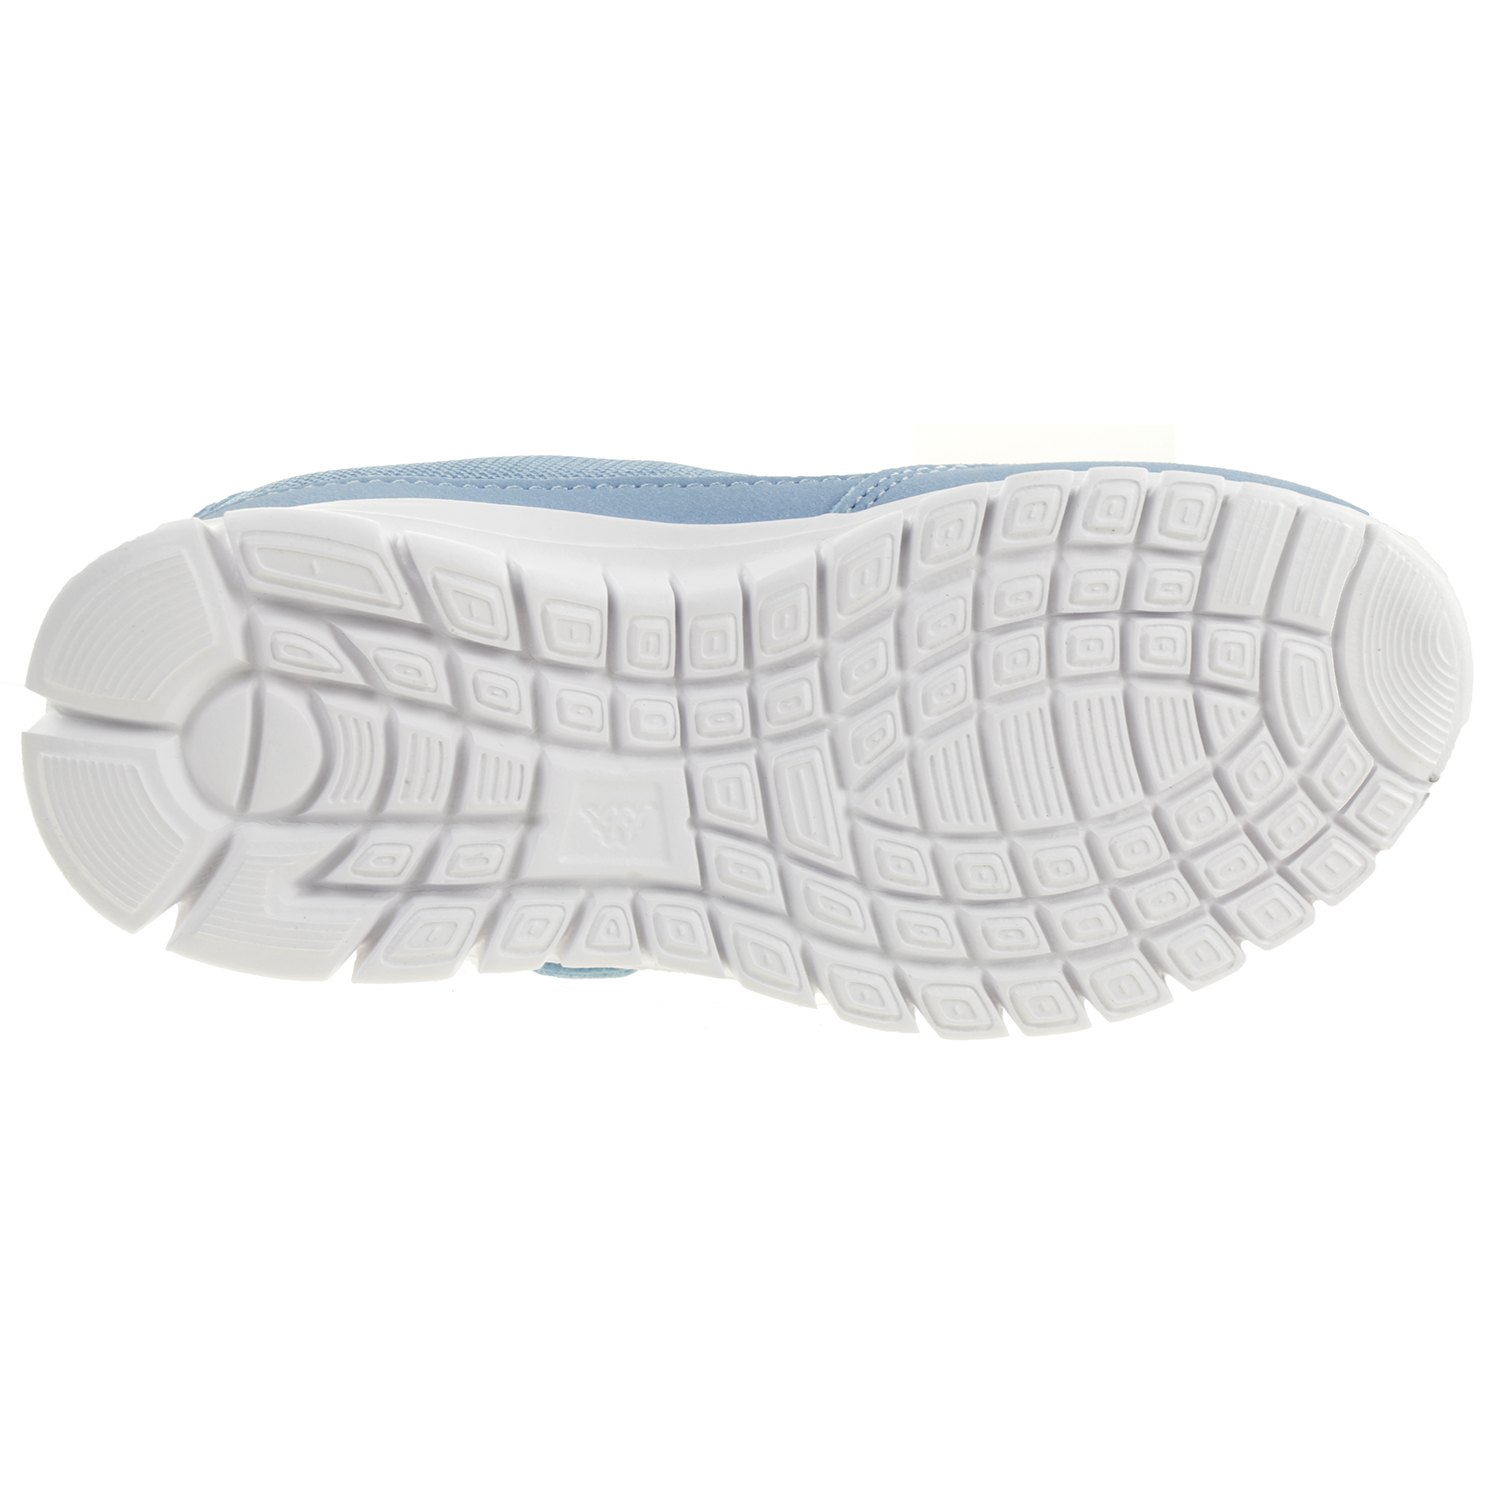 Kappa Unisex-Kinder Sneaker Blue/White 260604K